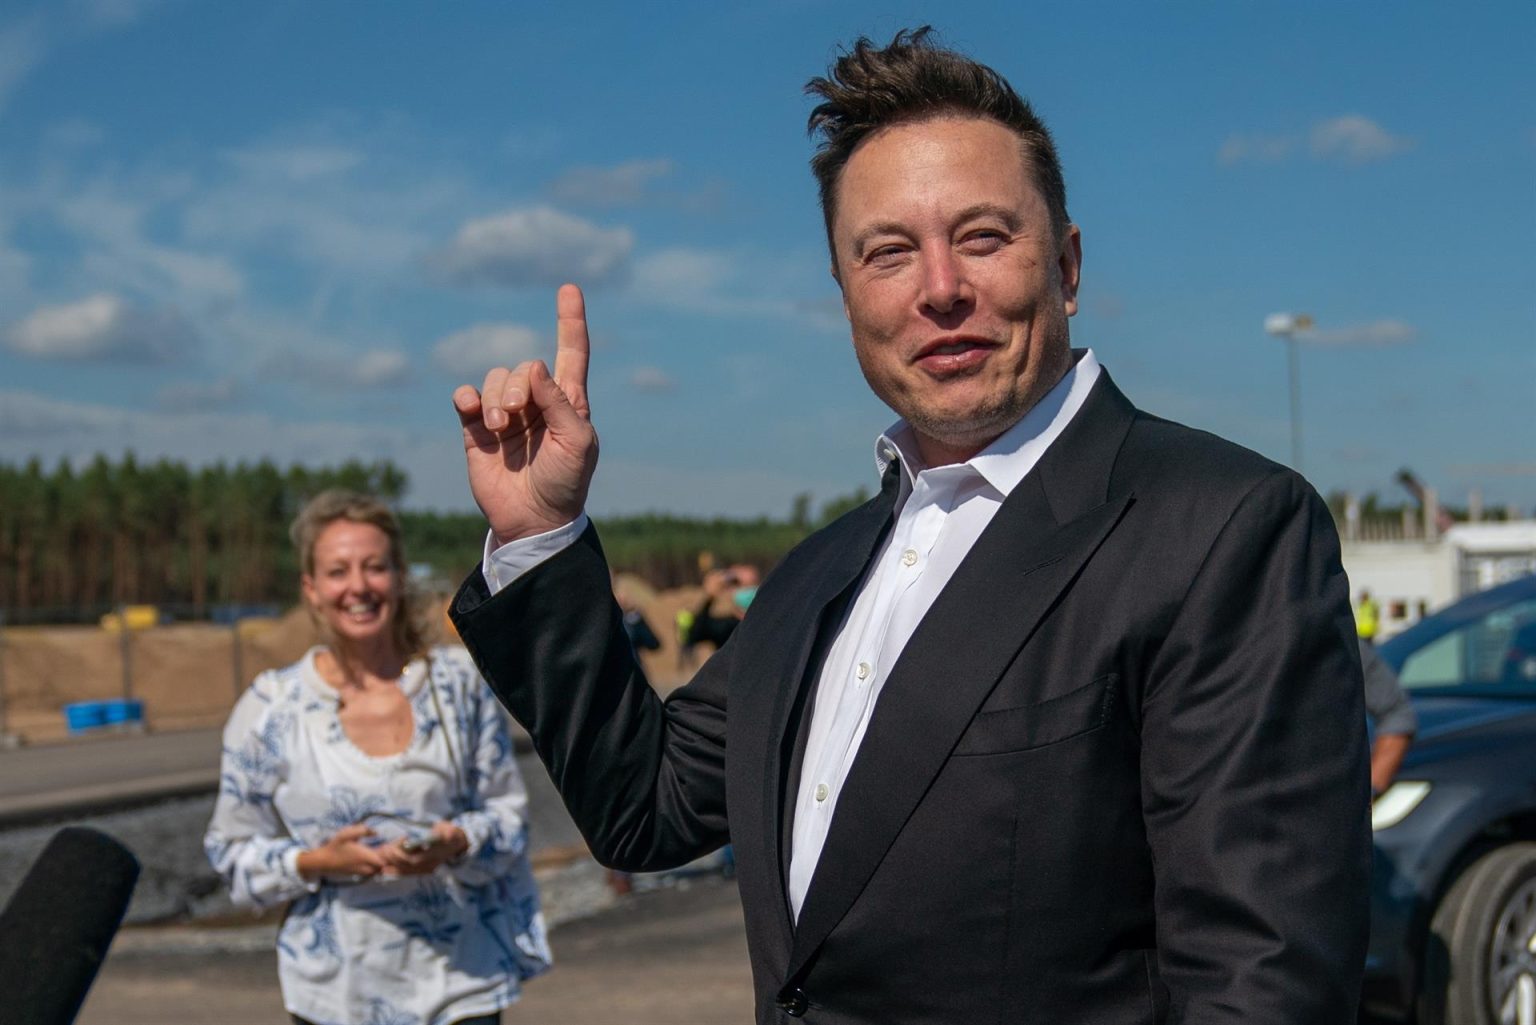 Fotografía de archivo que muestra al magnate Elon Musk. EFE/EPA/ALEXANDER BECHER